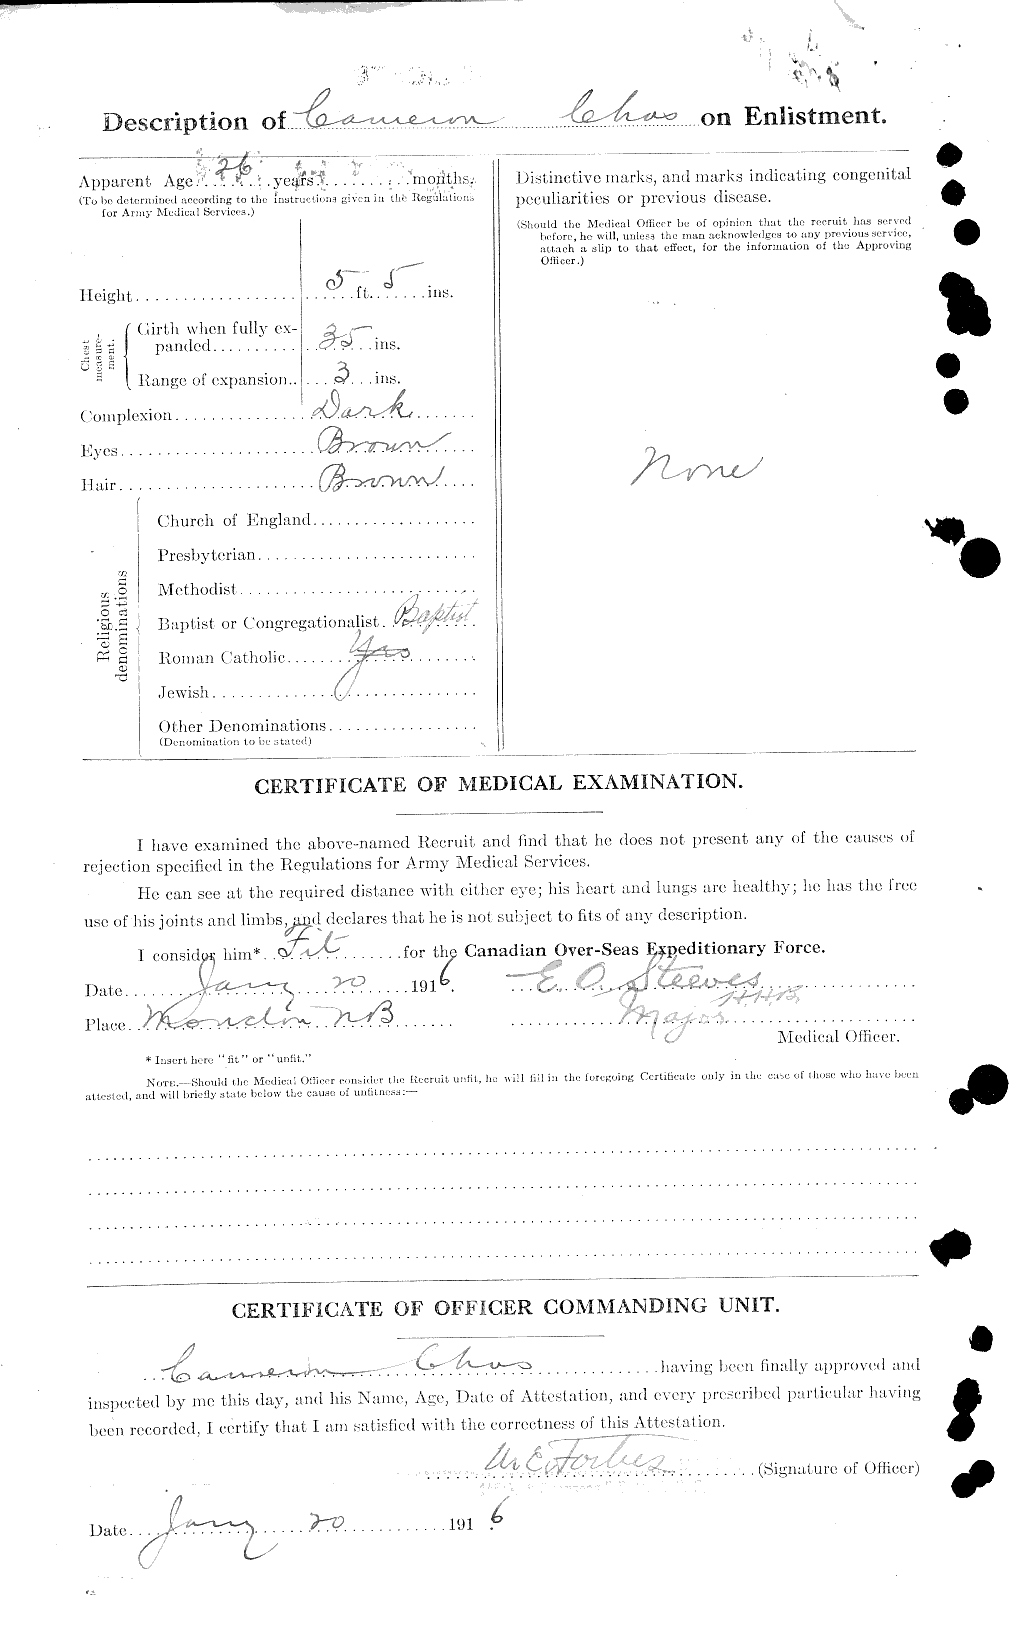 Dossiers du Personnel de la Première Guerre mondiale - CEC 002594b